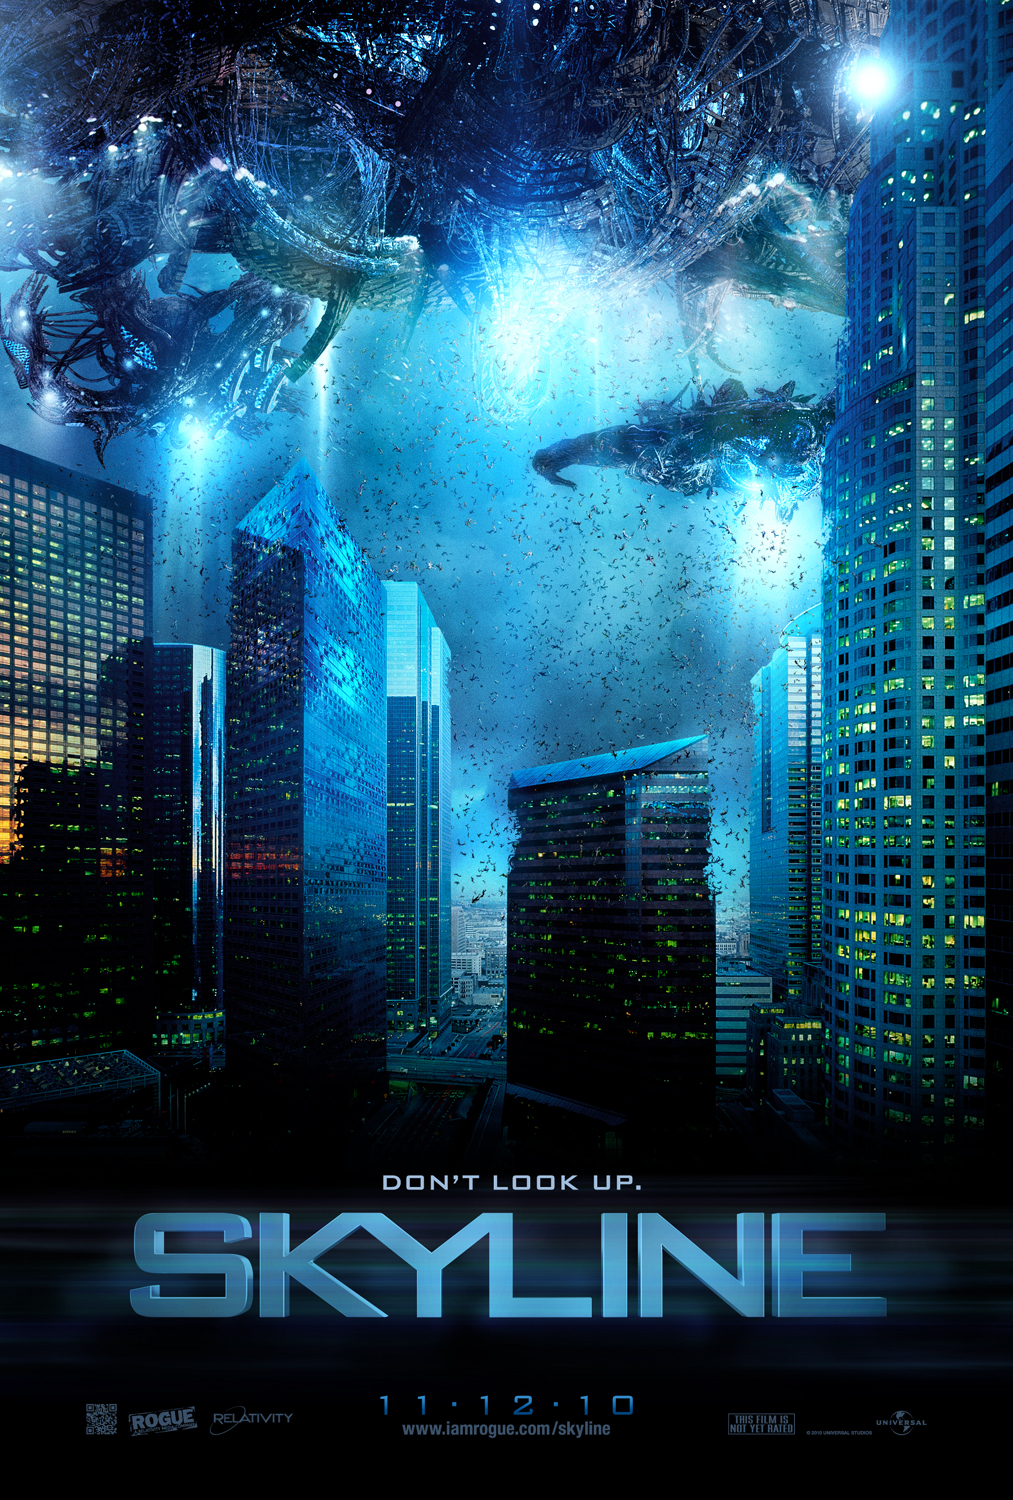 Skyline 2 (2013)